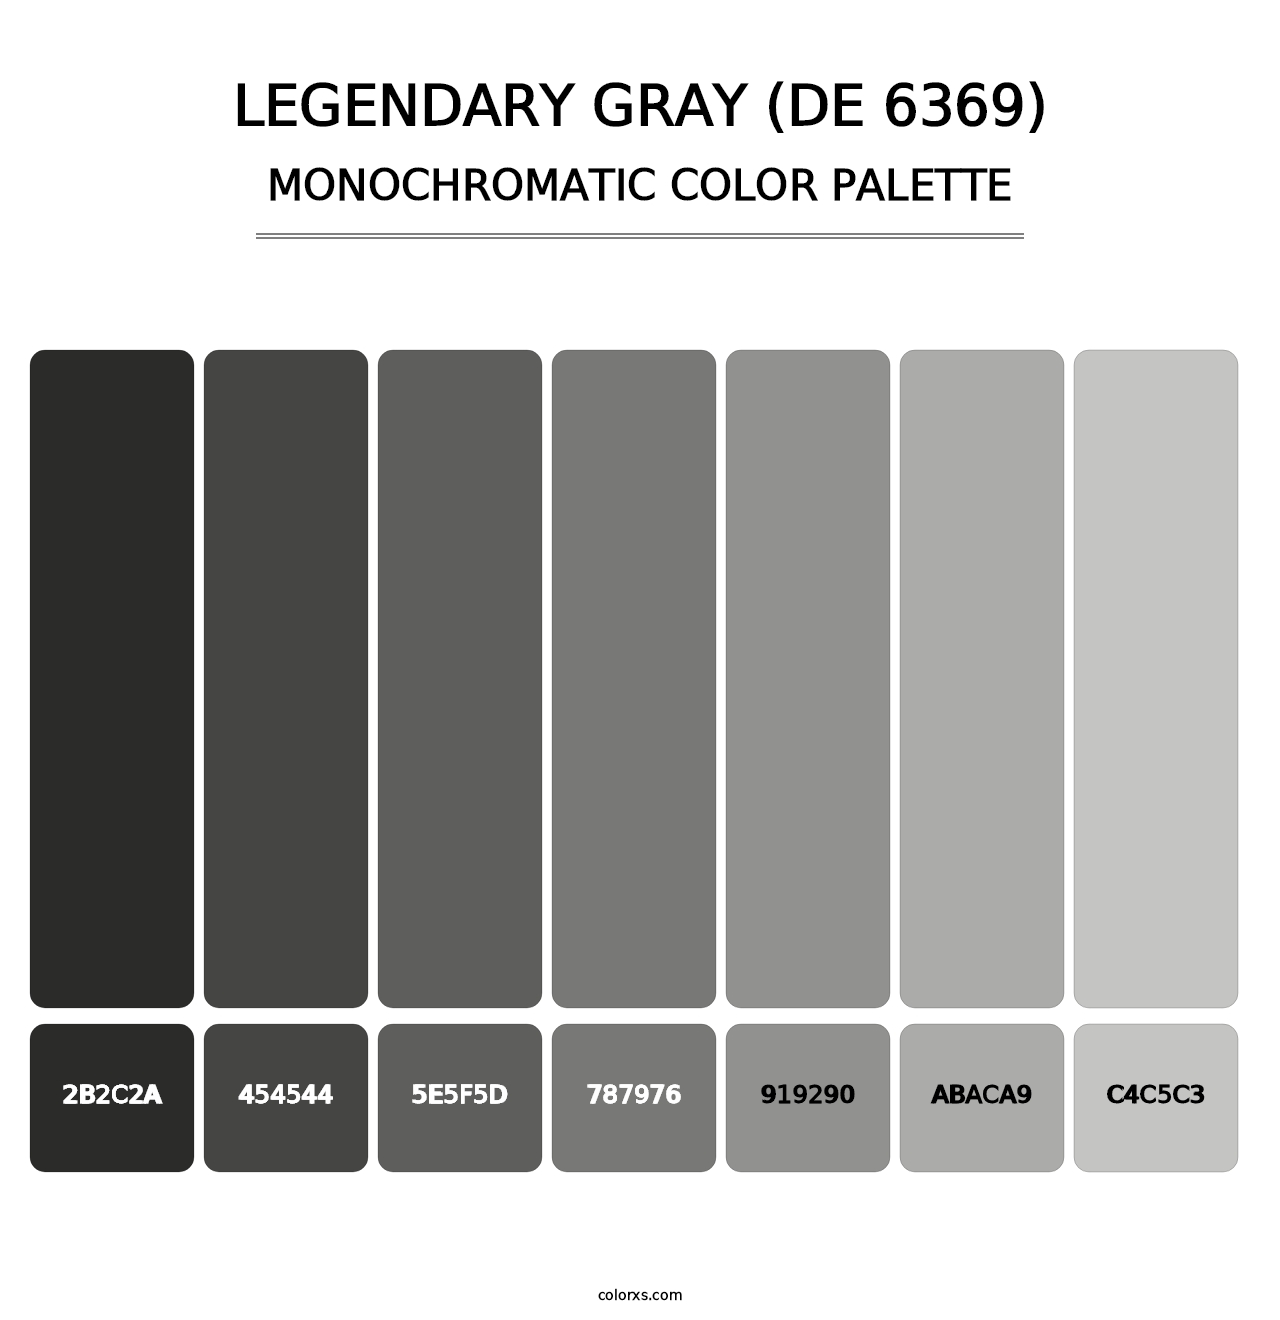 Legendary Gray (DE 6369) - Monochromatic Color Palette